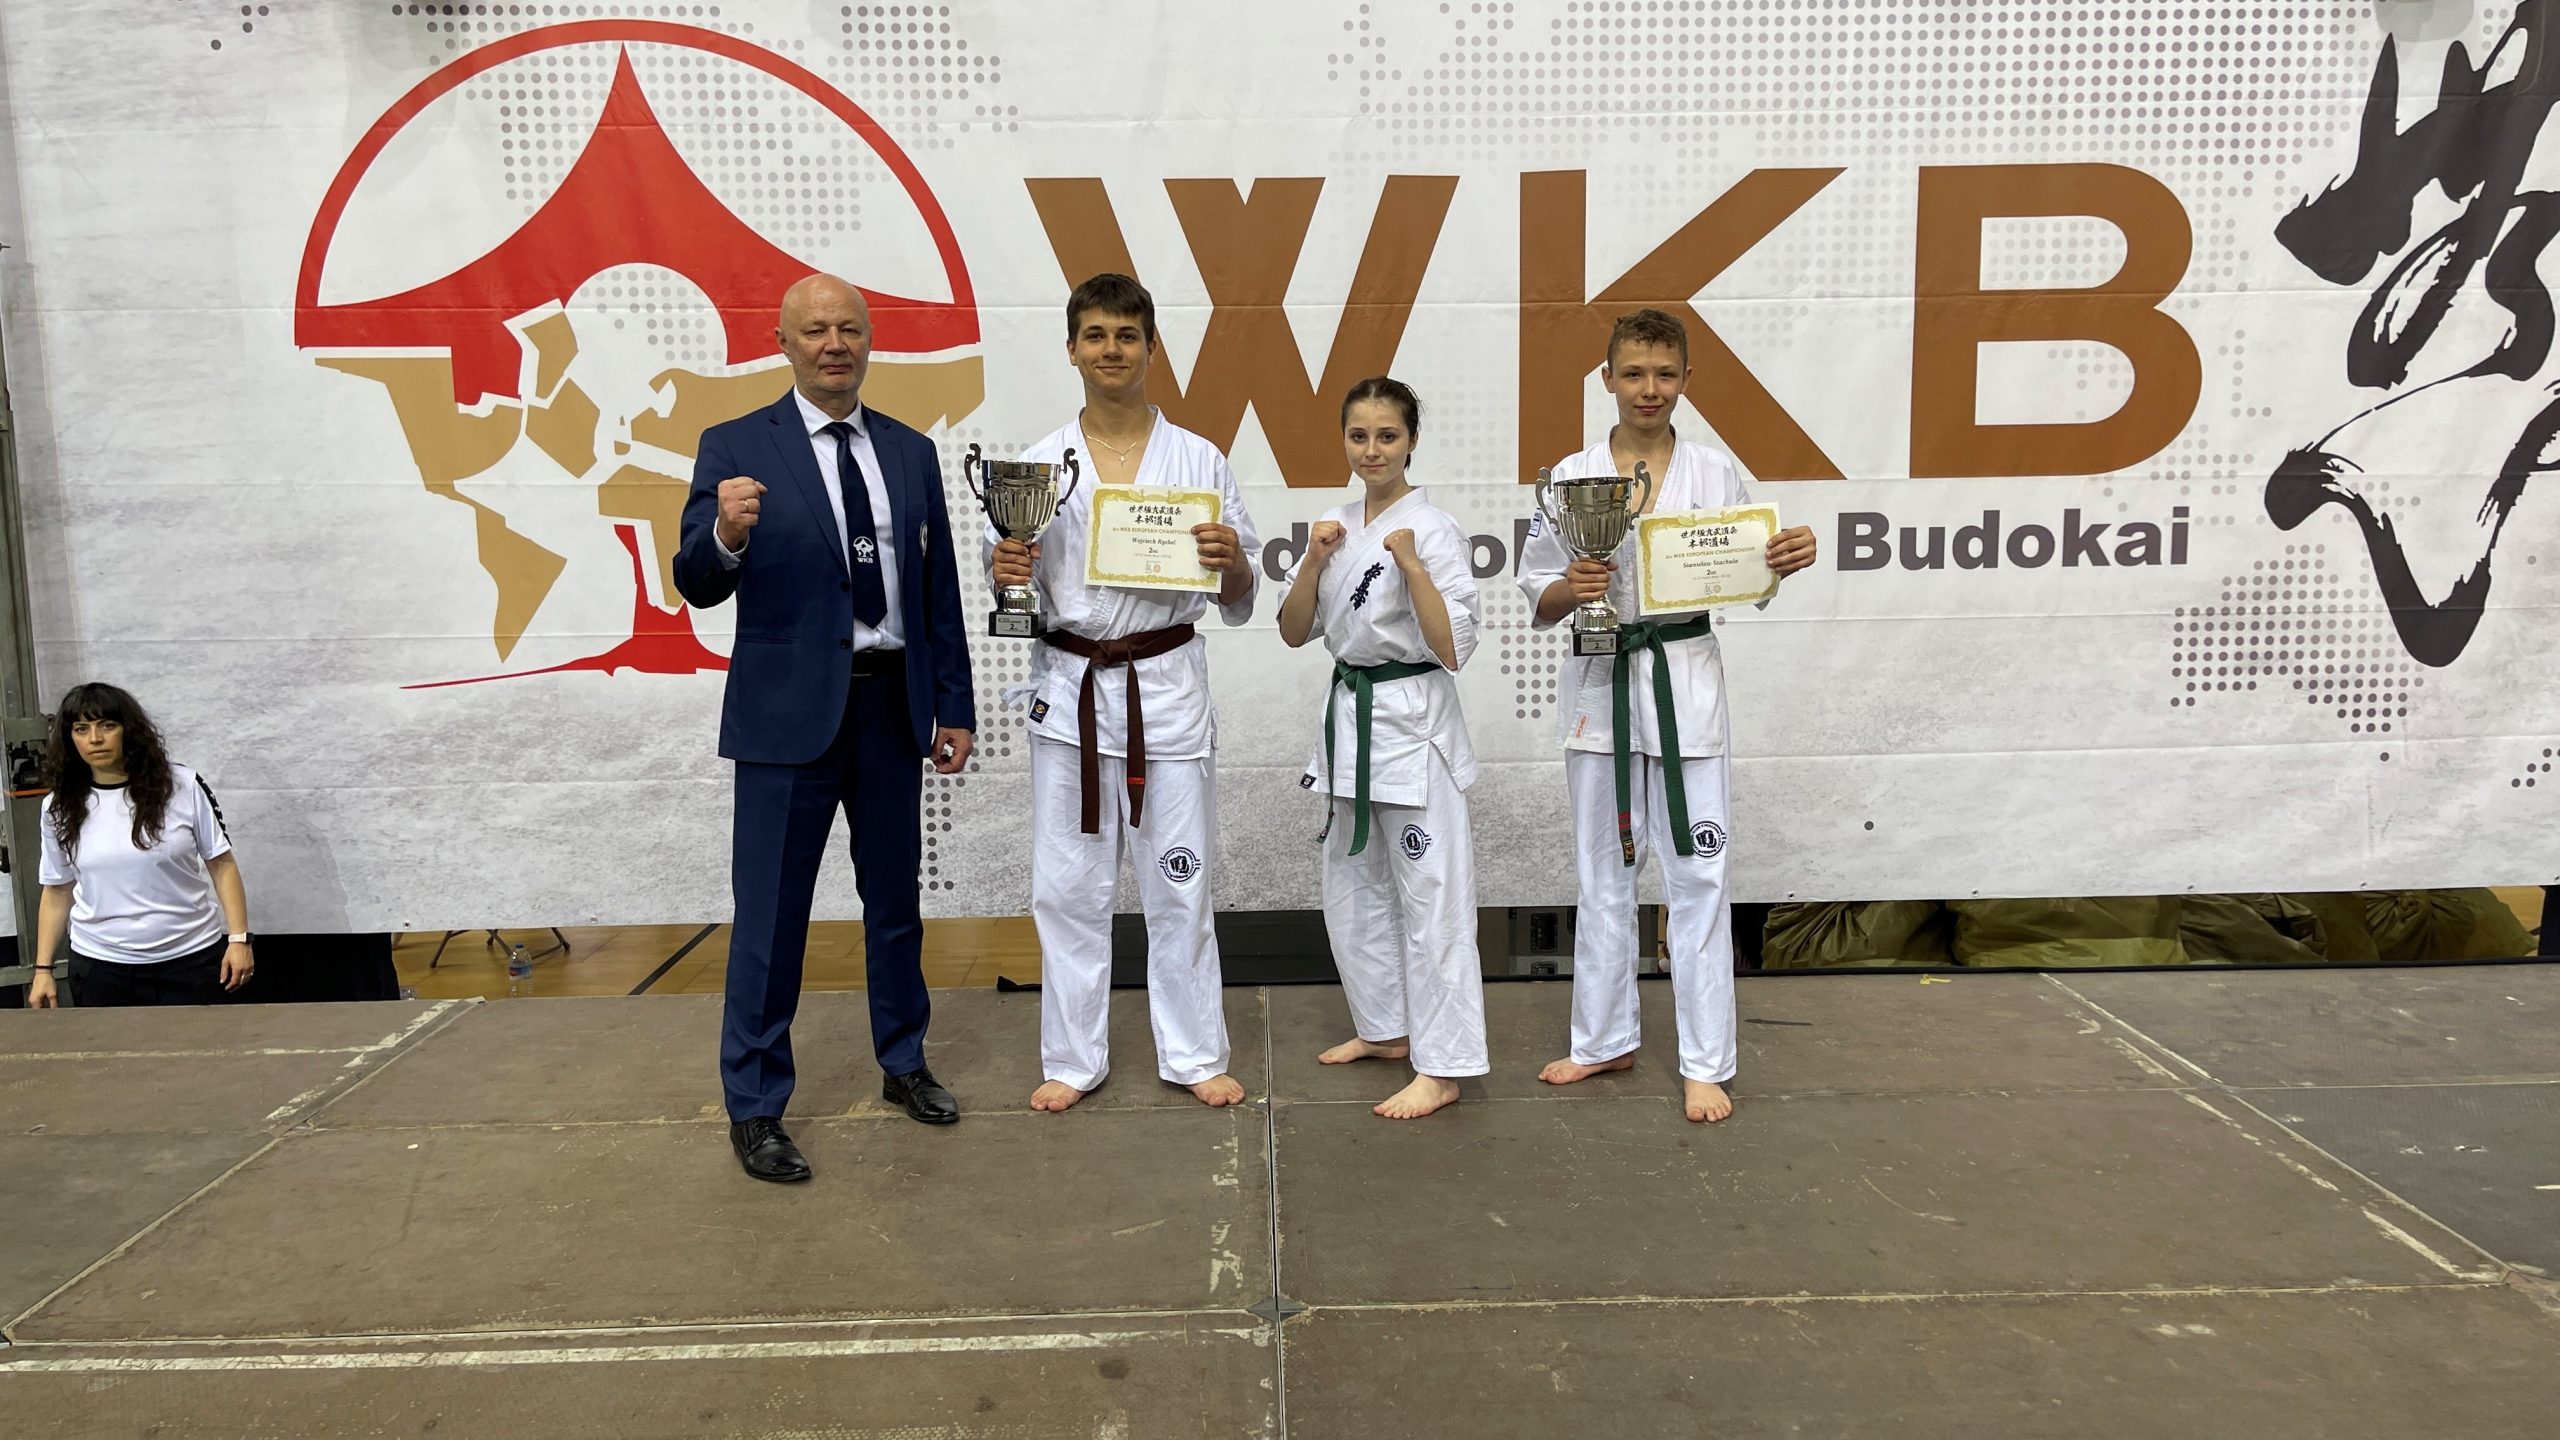 LKKK na Mistrzostwach Europy World Kyokushin Budokai w Barcelonie